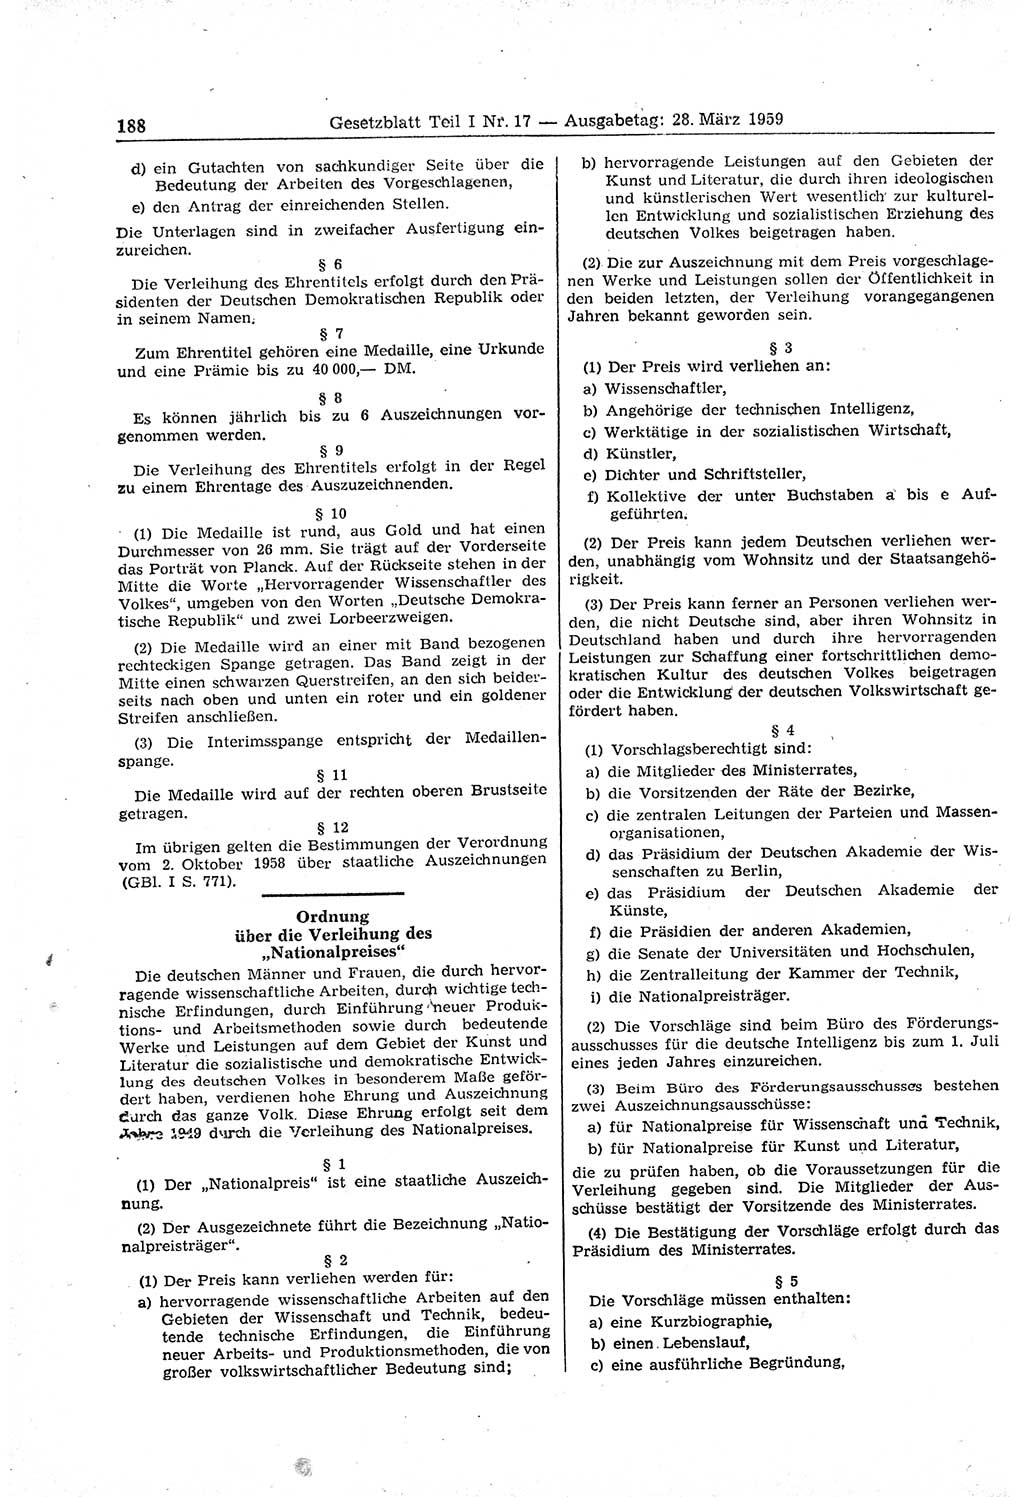 Gesetzblatt (GBl.) der Deutschen Demokratischen Republik (DDR) Teil Ⅰ 1959, Seite 188 (GBl. DDR Ⅰ 1959, S. 188)